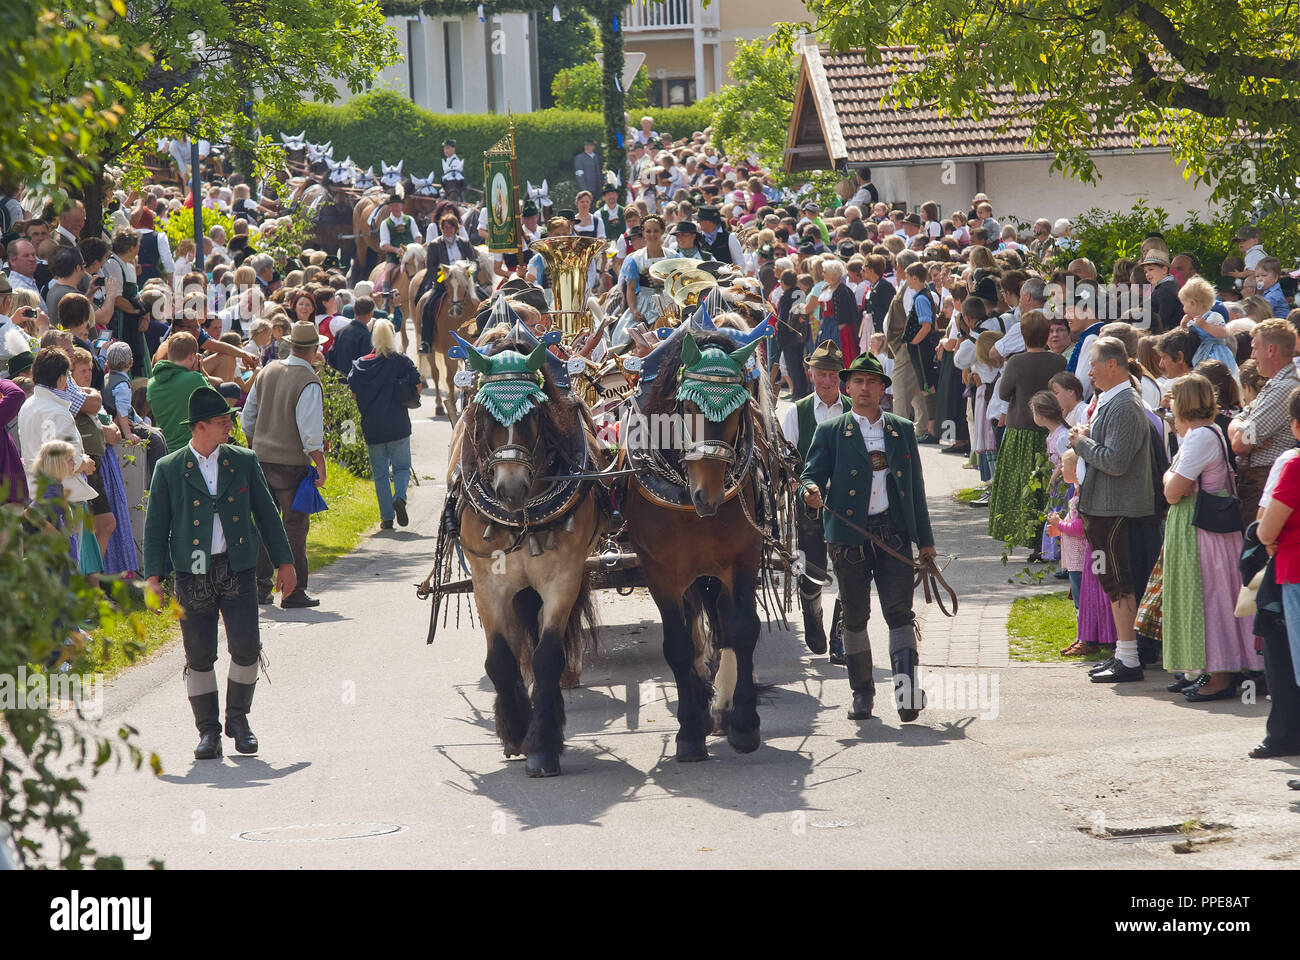 Mitfahrer auf traditionell geschmückten Pferden an der Leonhardiritt (St. Leonard's Ride) in Holzhausen - Teisendorf, Oberbayern. Die Prozession, wo die wunderschön gestalteten Pferde gesegnet sind, wurde erstmals im Jahre 1612 erwähnt. Stockfoto